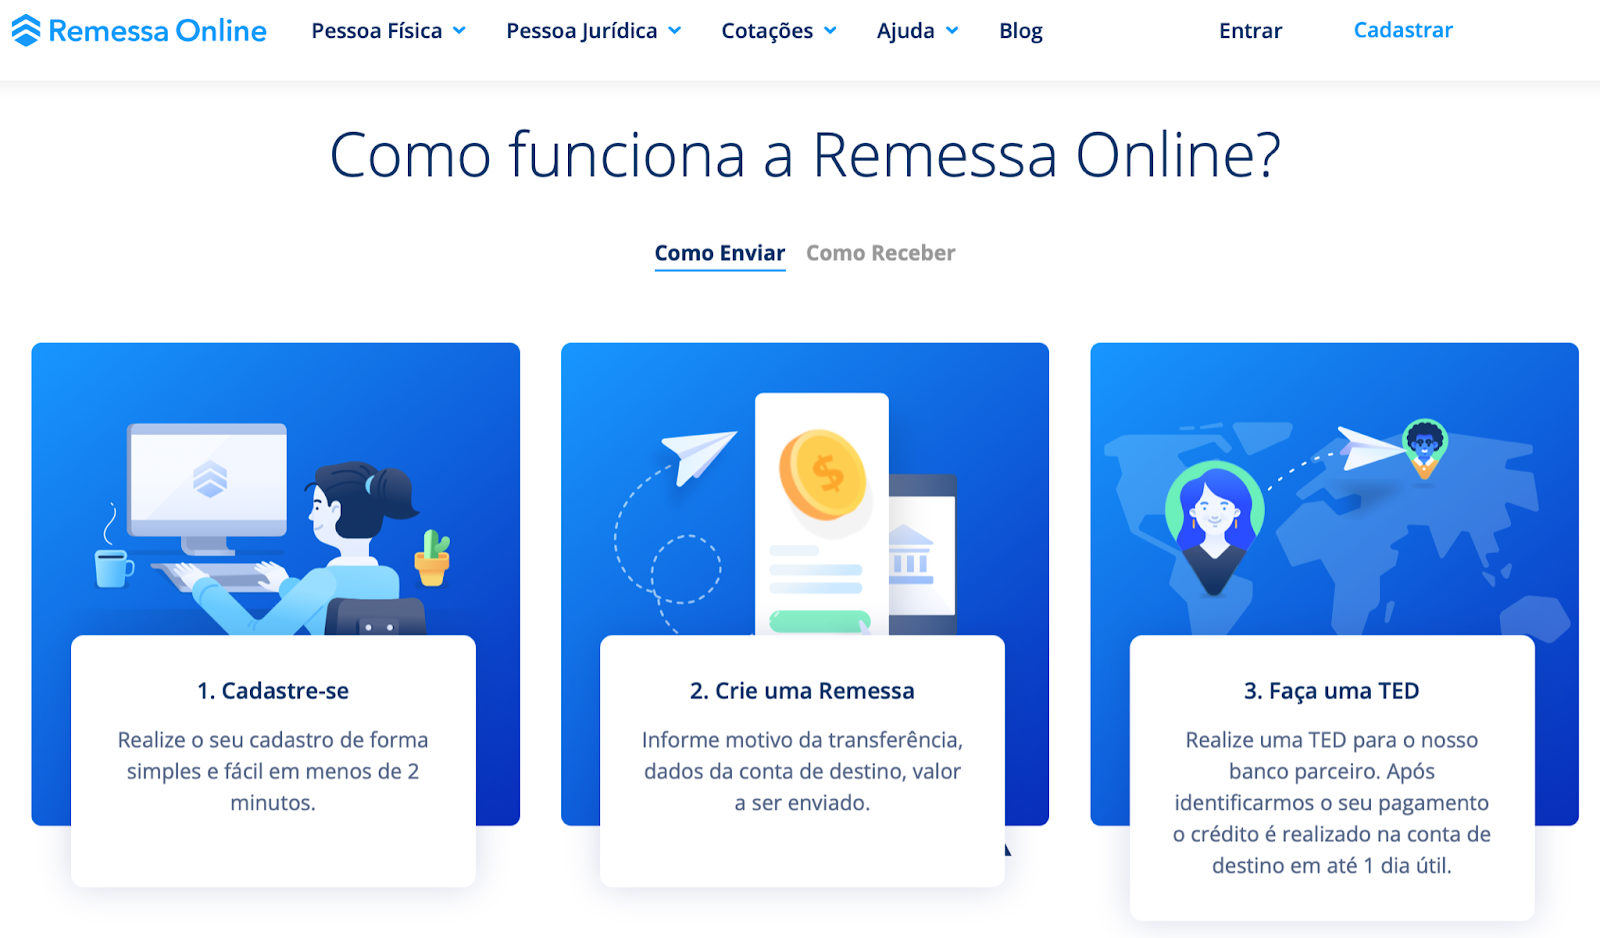 Fotografia explicativa de como funciona o Remessa Online em três passos